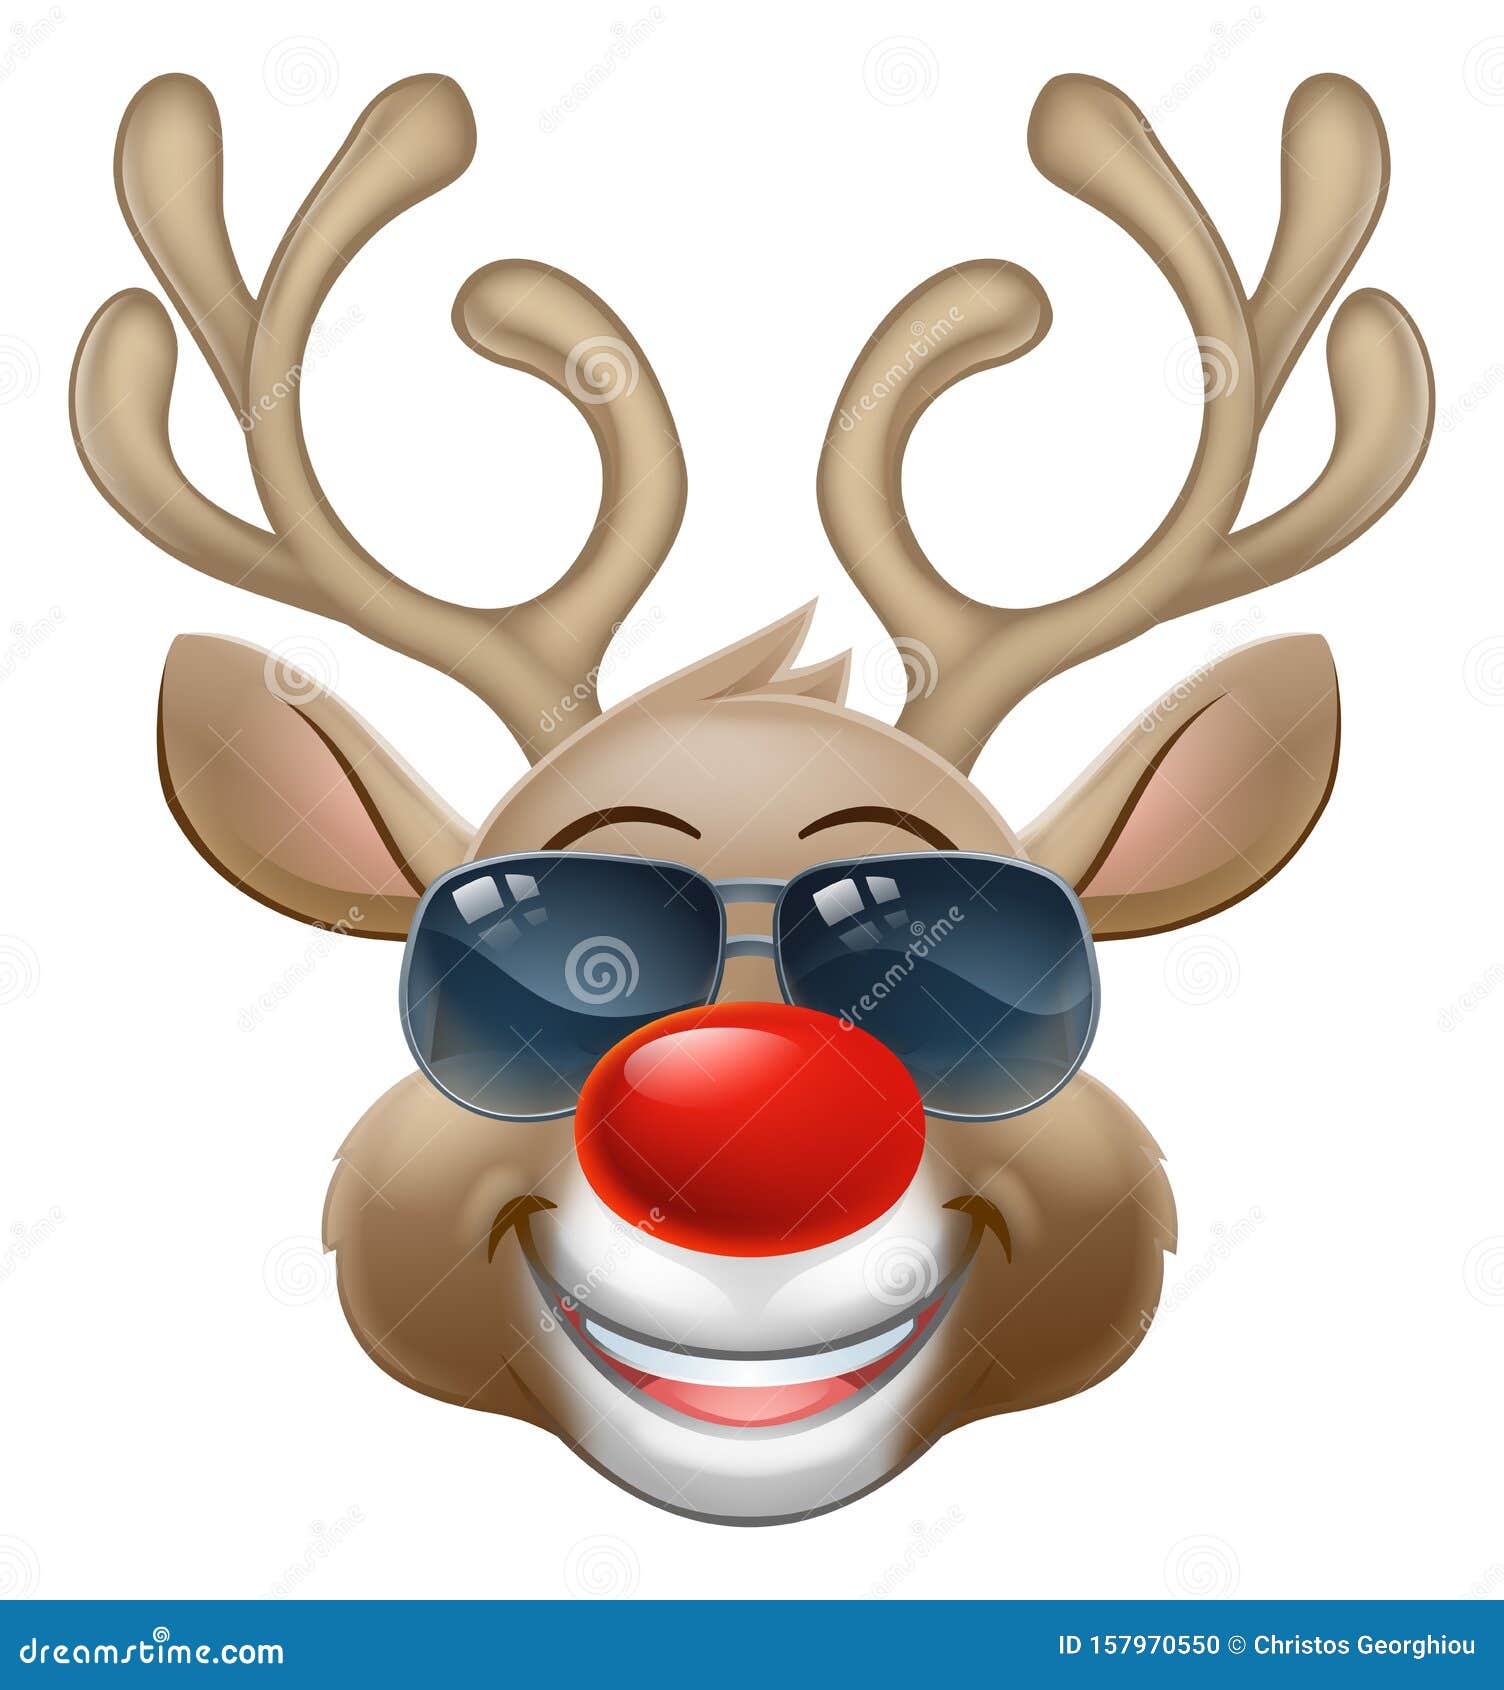 cool christmas reindeer cartoon deer in sunglasses